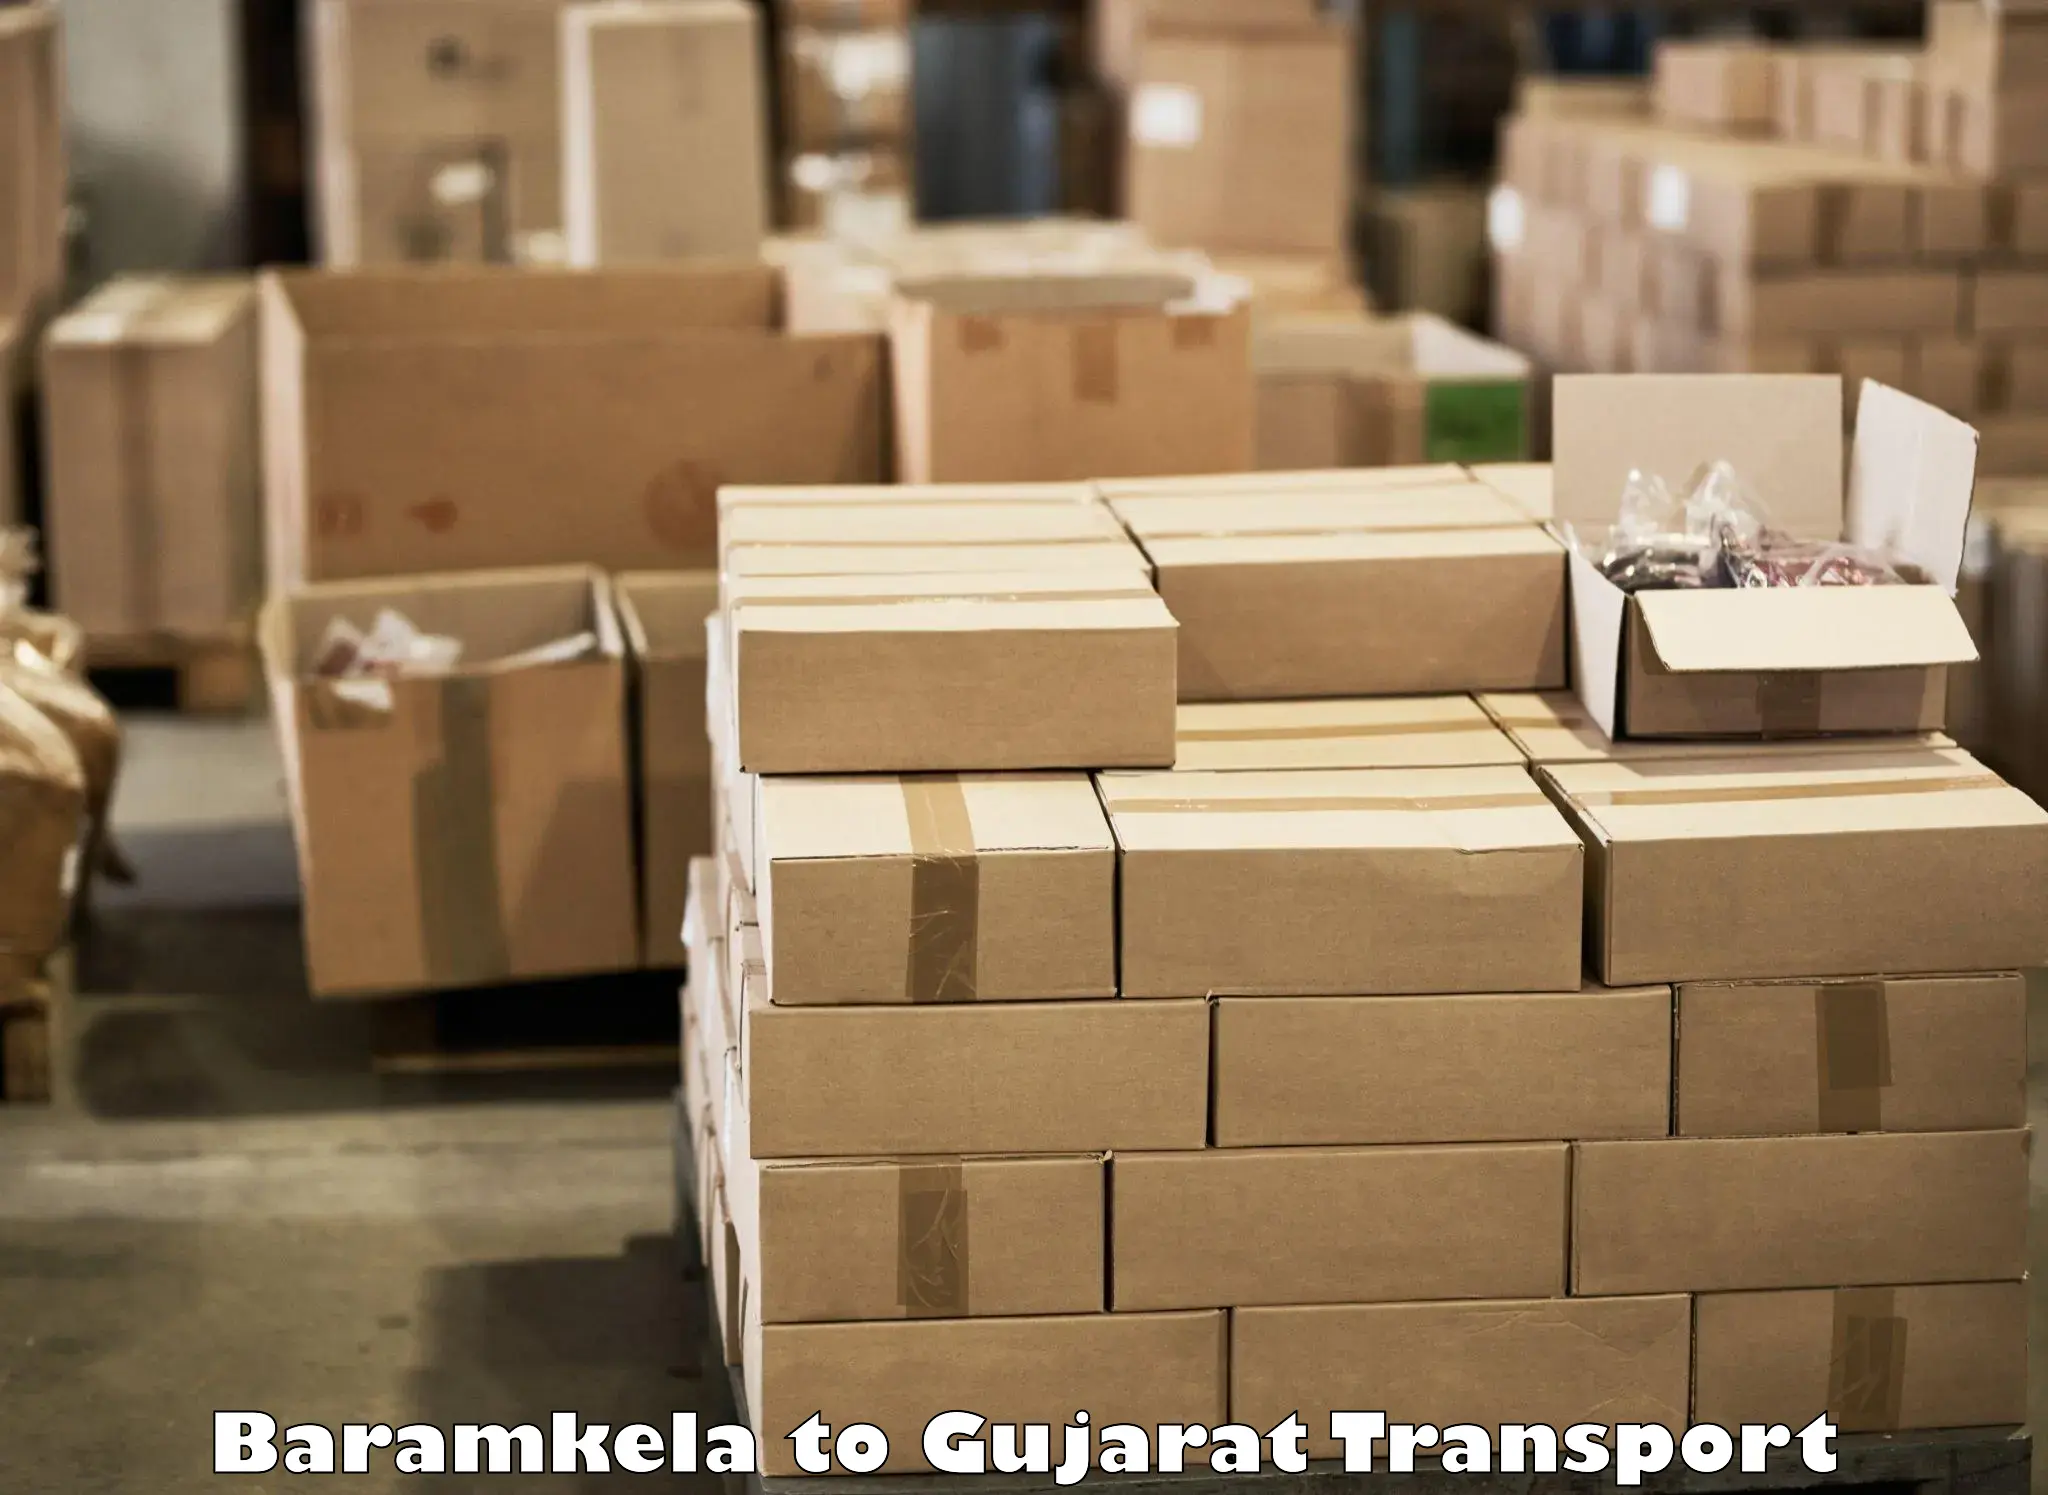 Nationwide transport services Baramkela to Mundra